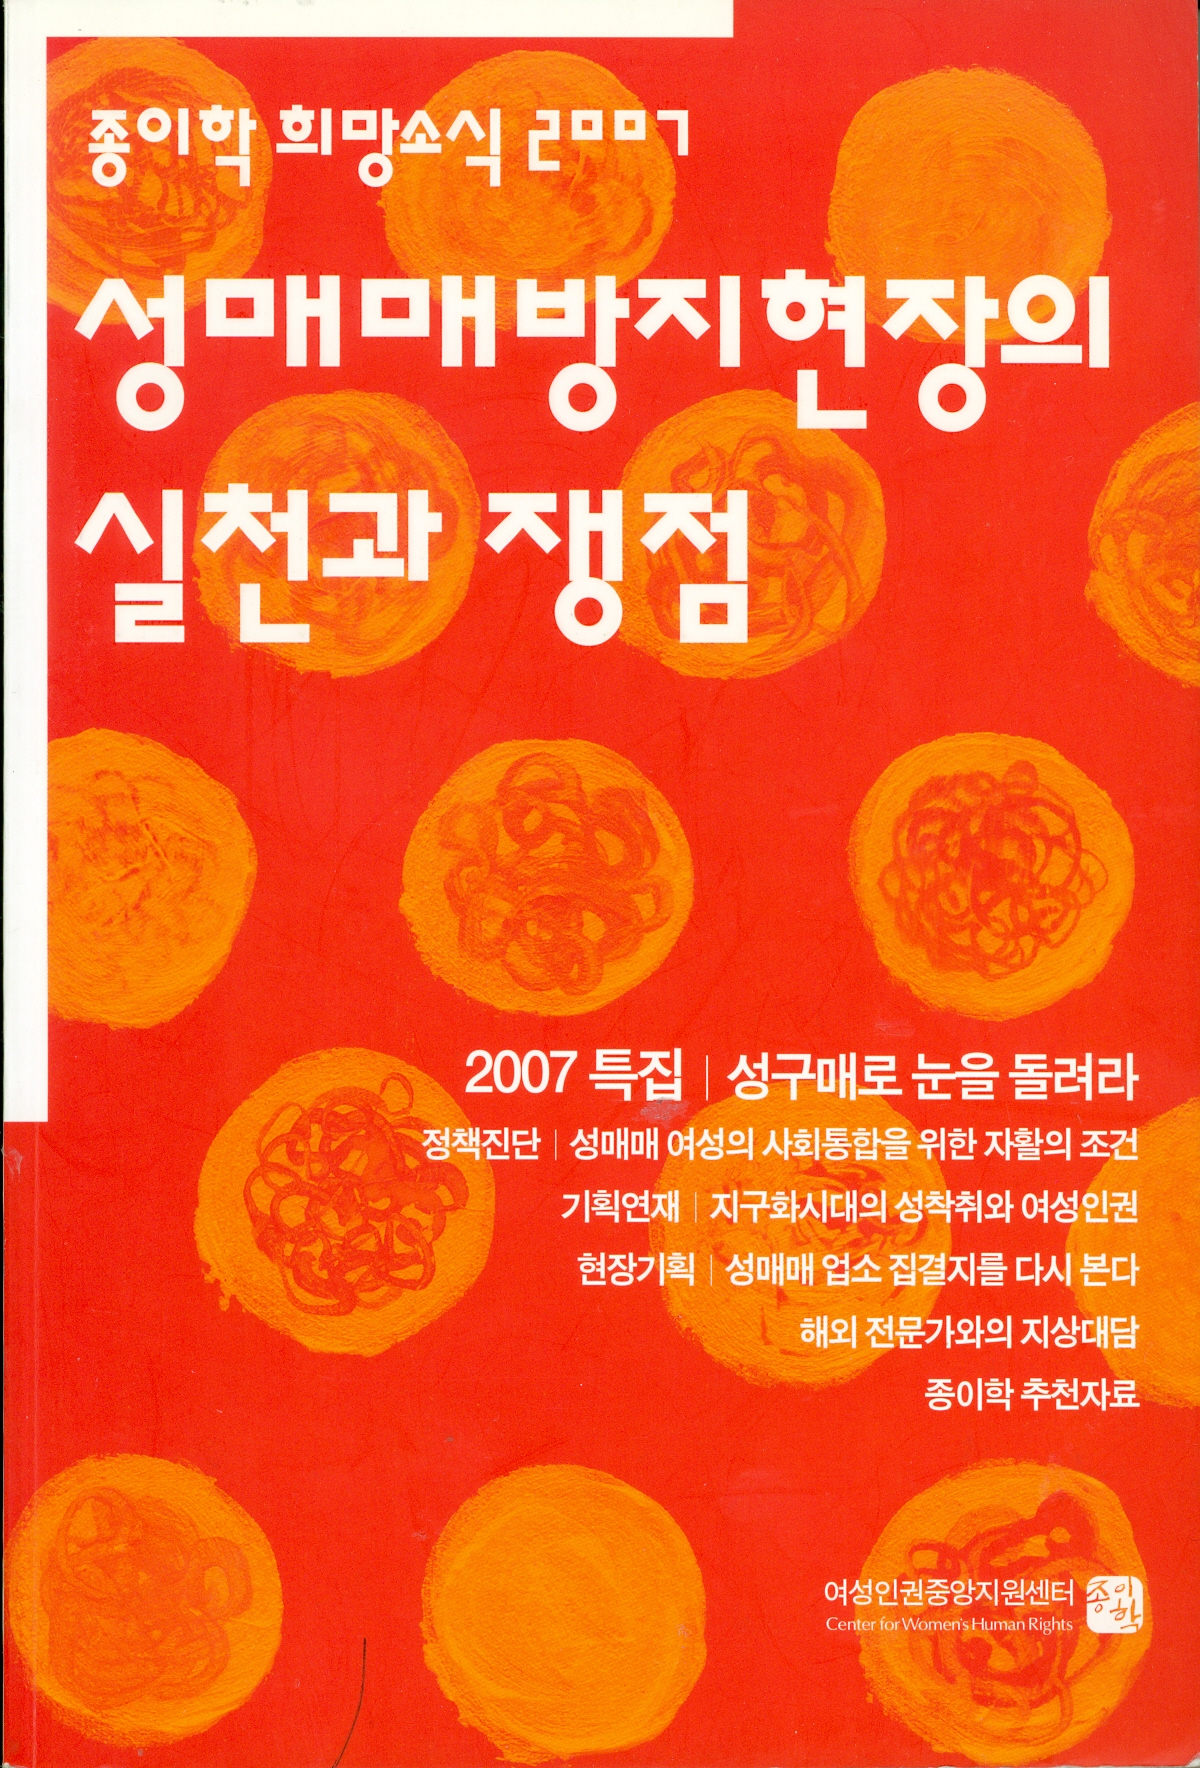 2007 Jong-I-Hak News for Hope